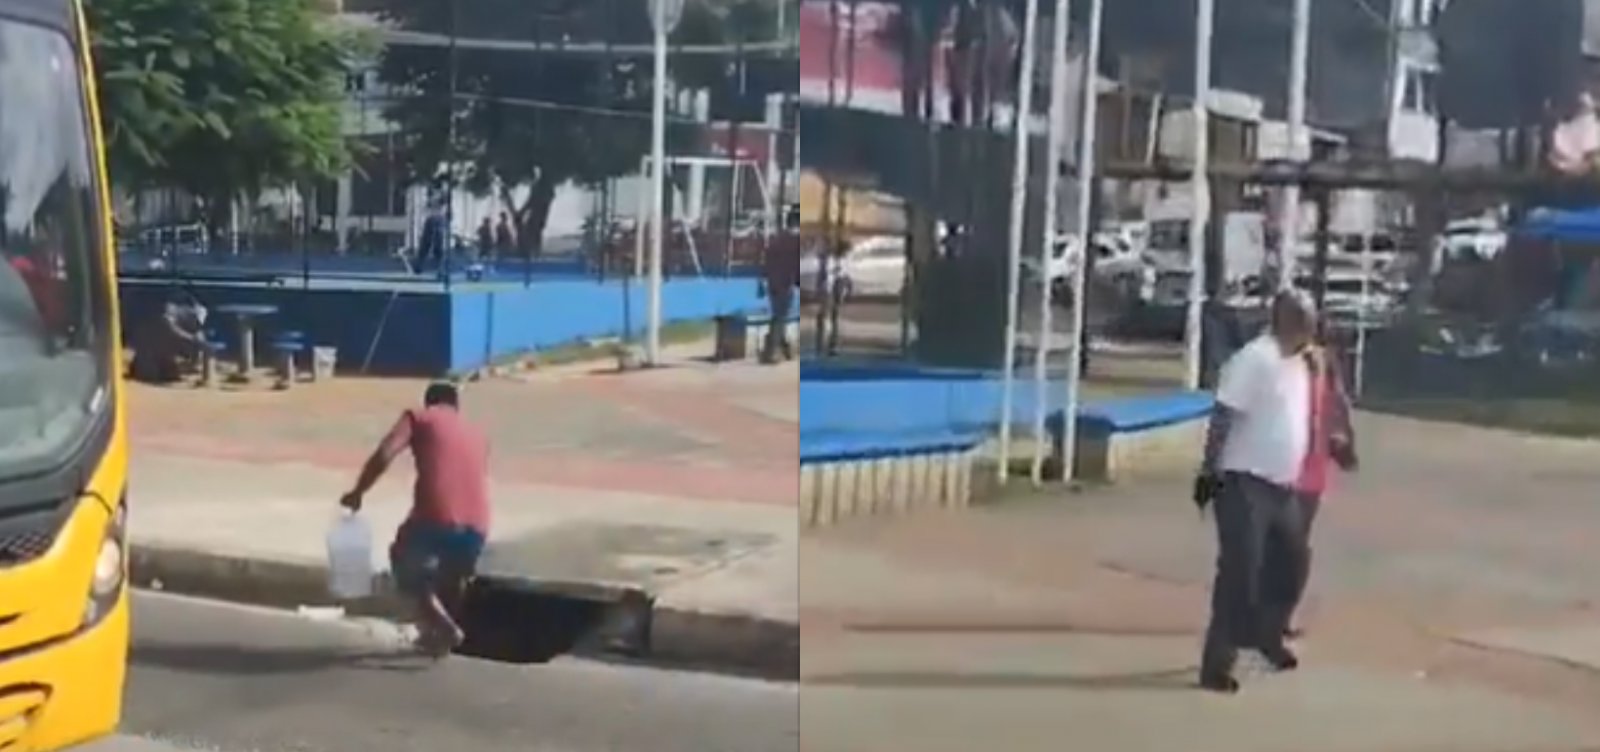  Passageiro joga pedra em ônibus e rodoviário revida no Largo do Tanque